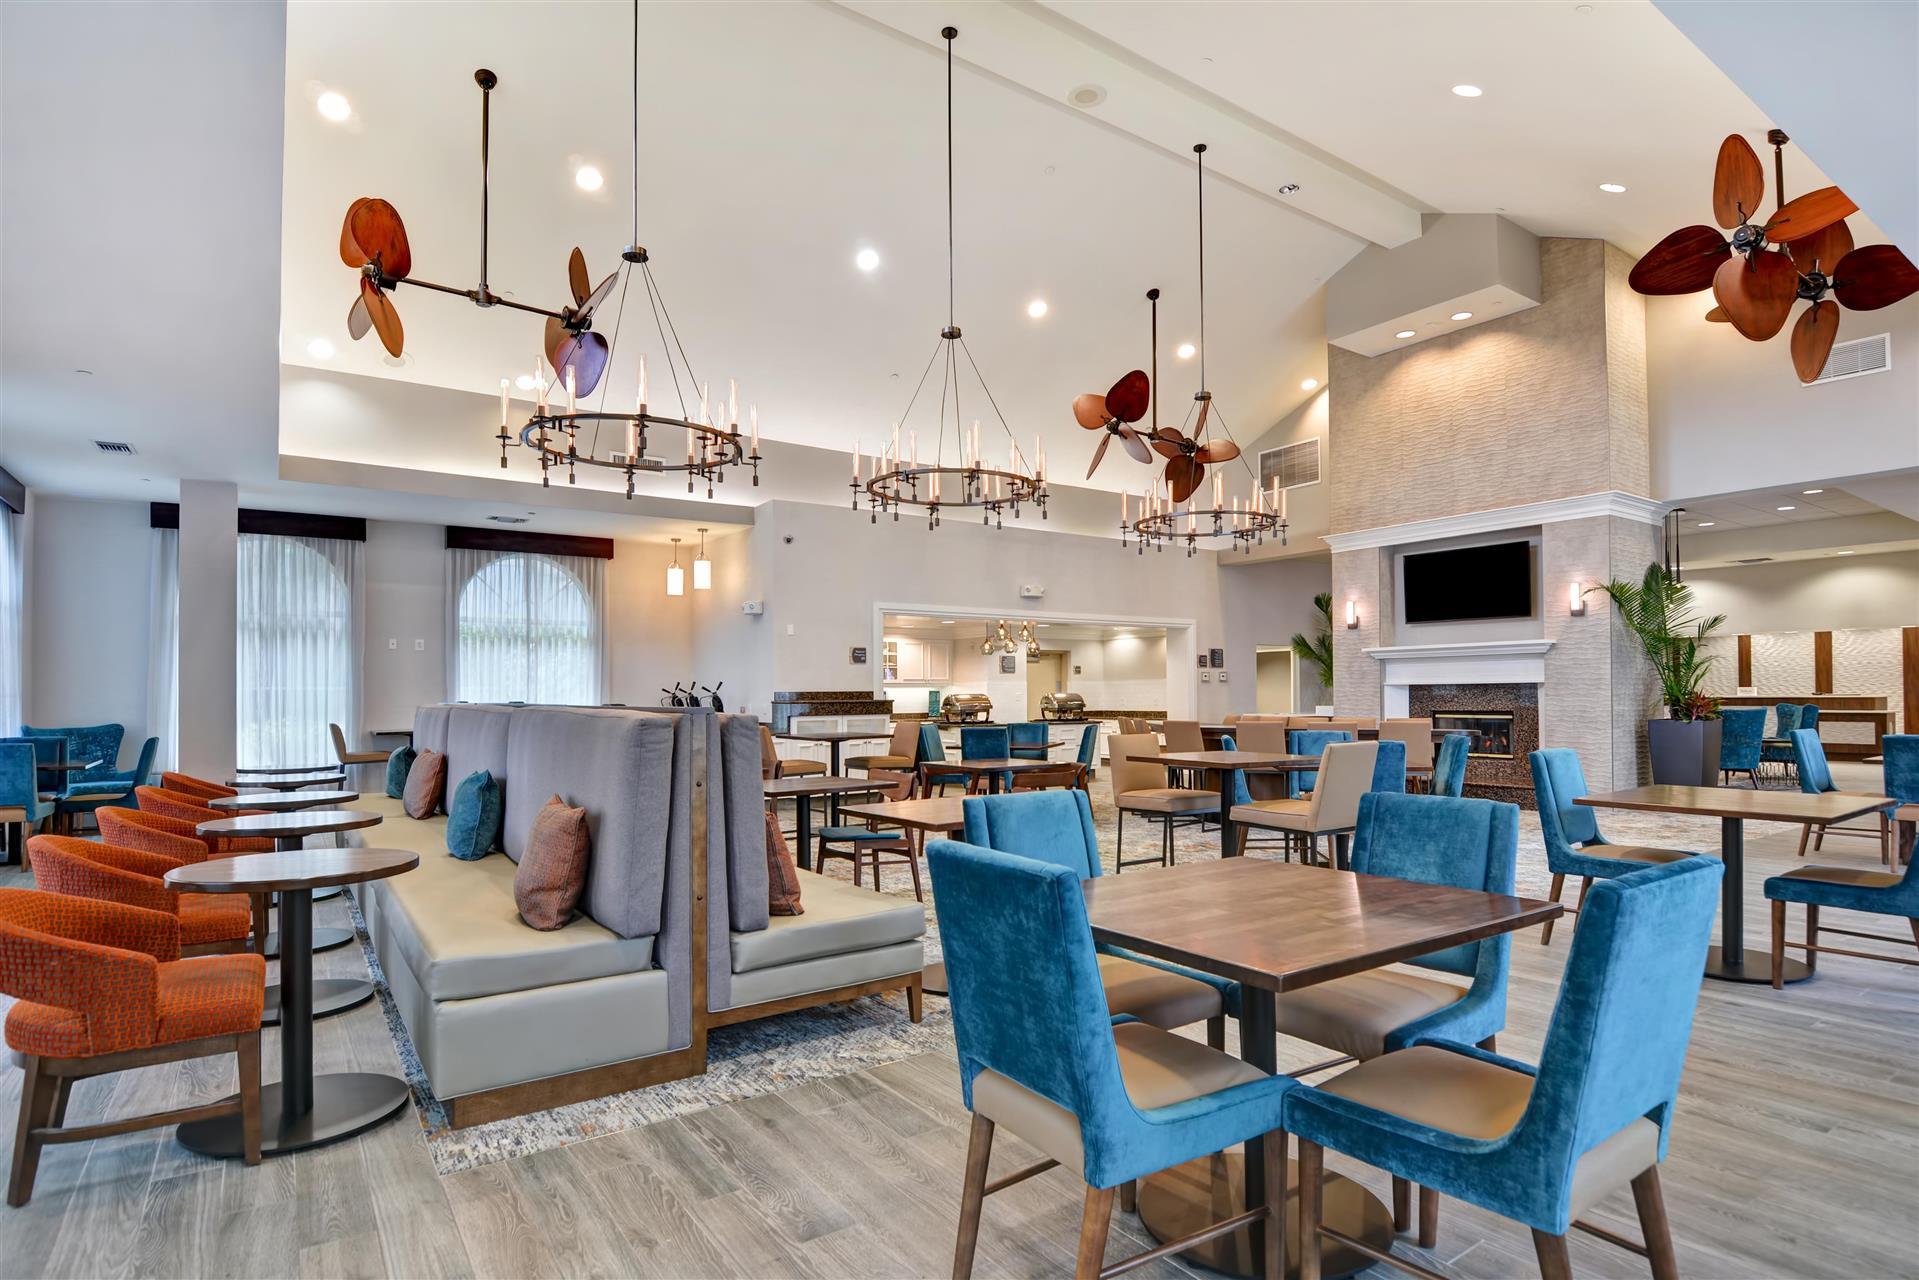 Homewood Suites by Hilton Lake Buena Vista - Orlando in Orlando, FL